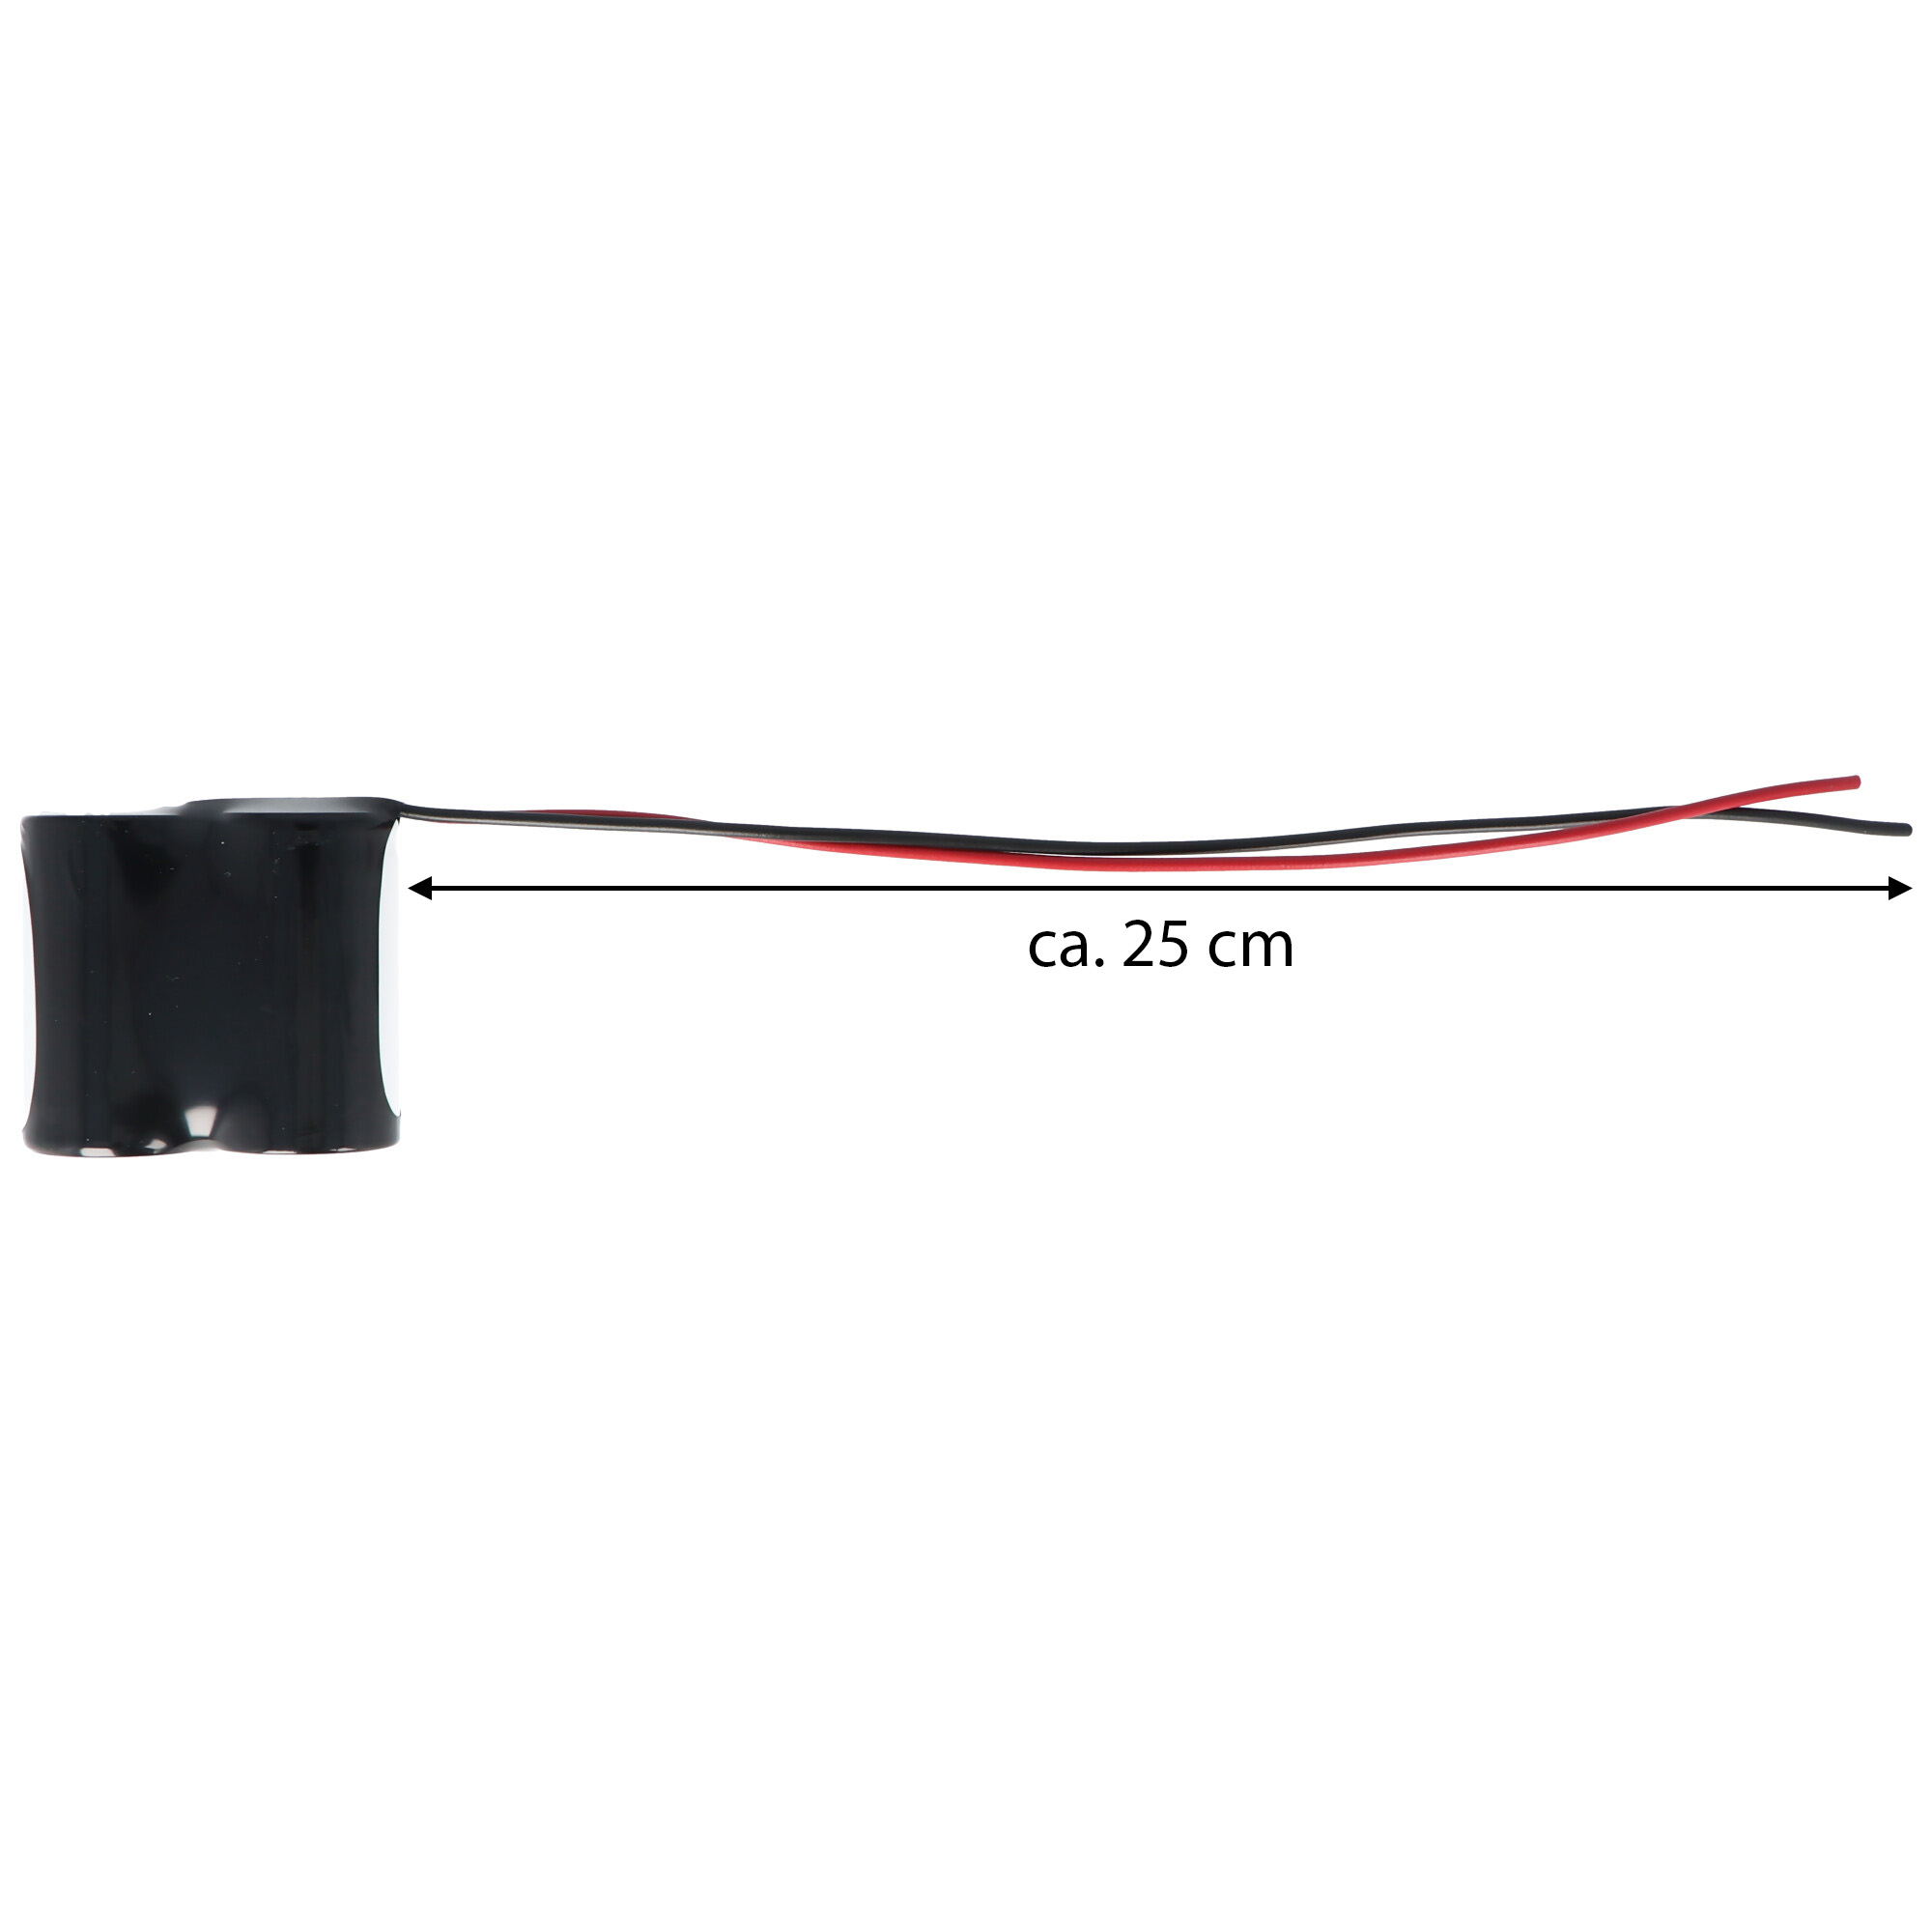 Notleuchtenakku NiCd 2,4V 4500mAh F1x2 Mono D mit 200mm Kabel einseitig einseitig passend für 2,4 V Akku